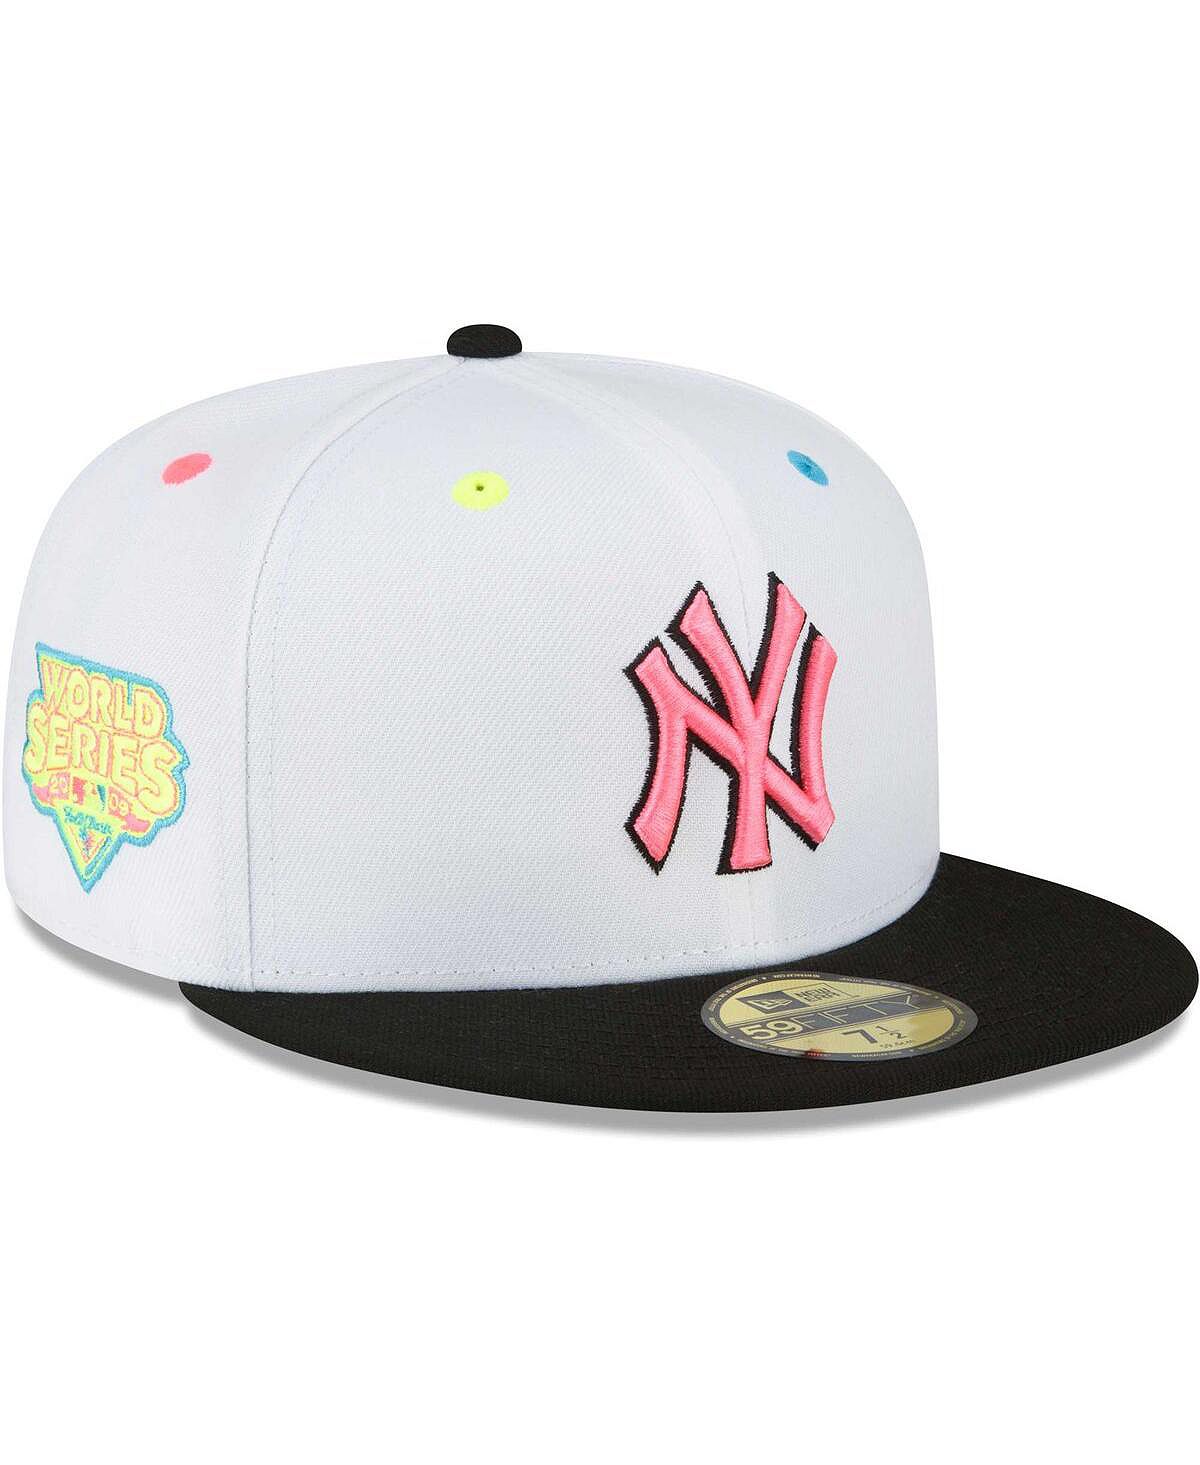 

Мужская белая приталенная шляпа New York Yankees Neon Eye 59FIFTY New Era